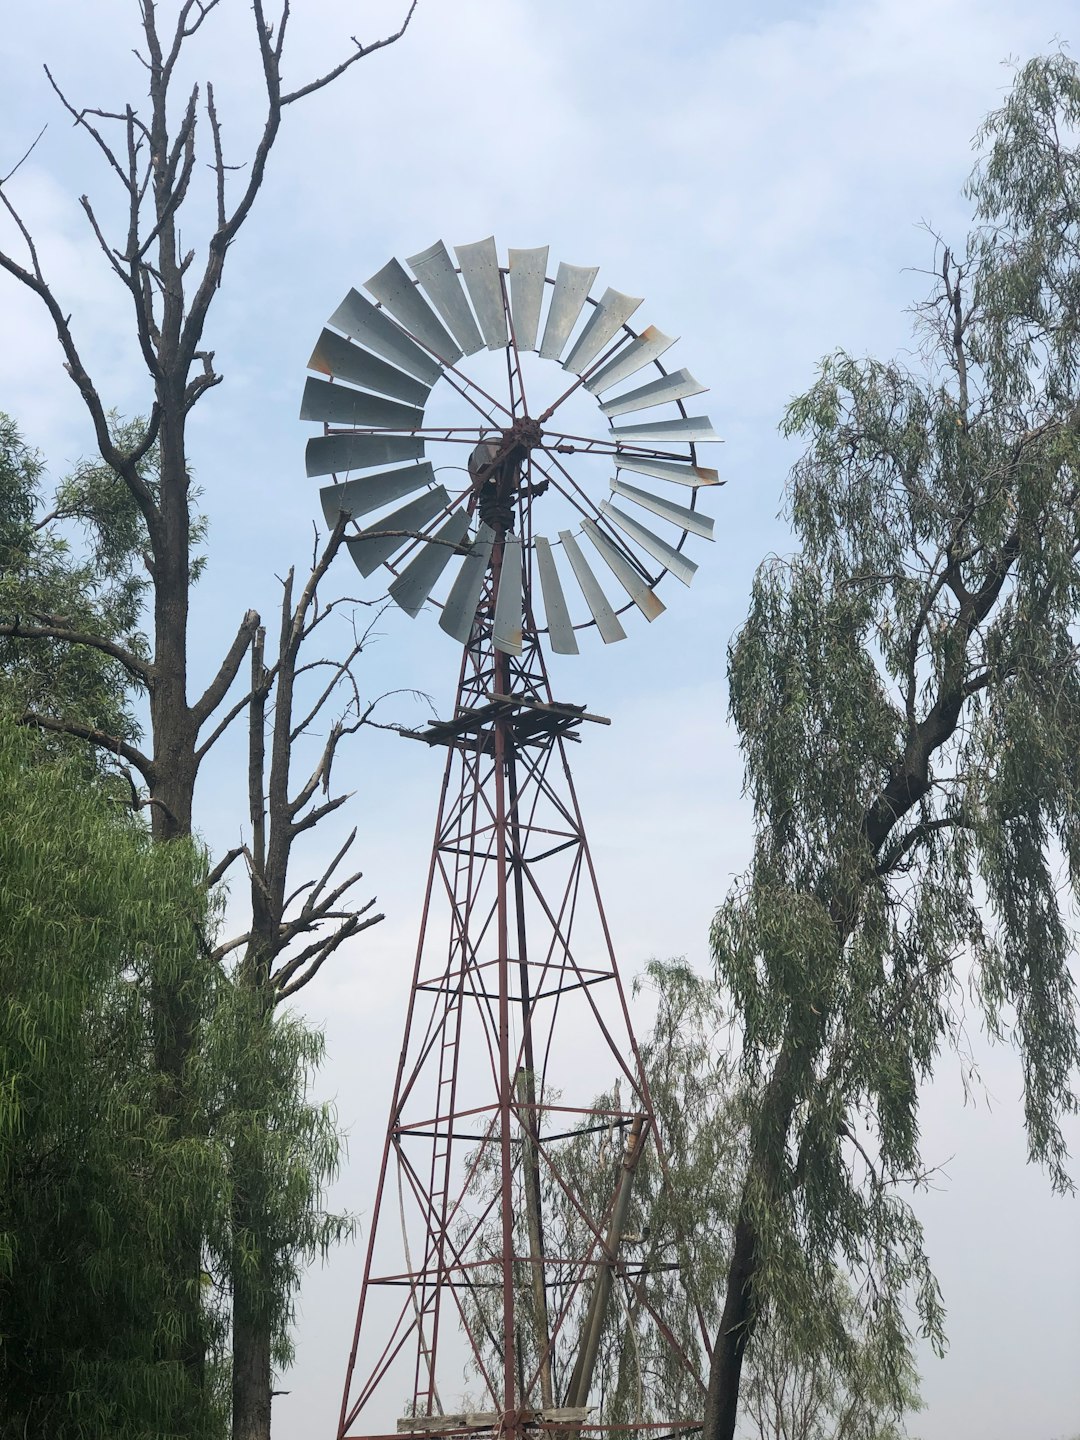 Ferris wheel photo spot Moree NSW 2400 Australia